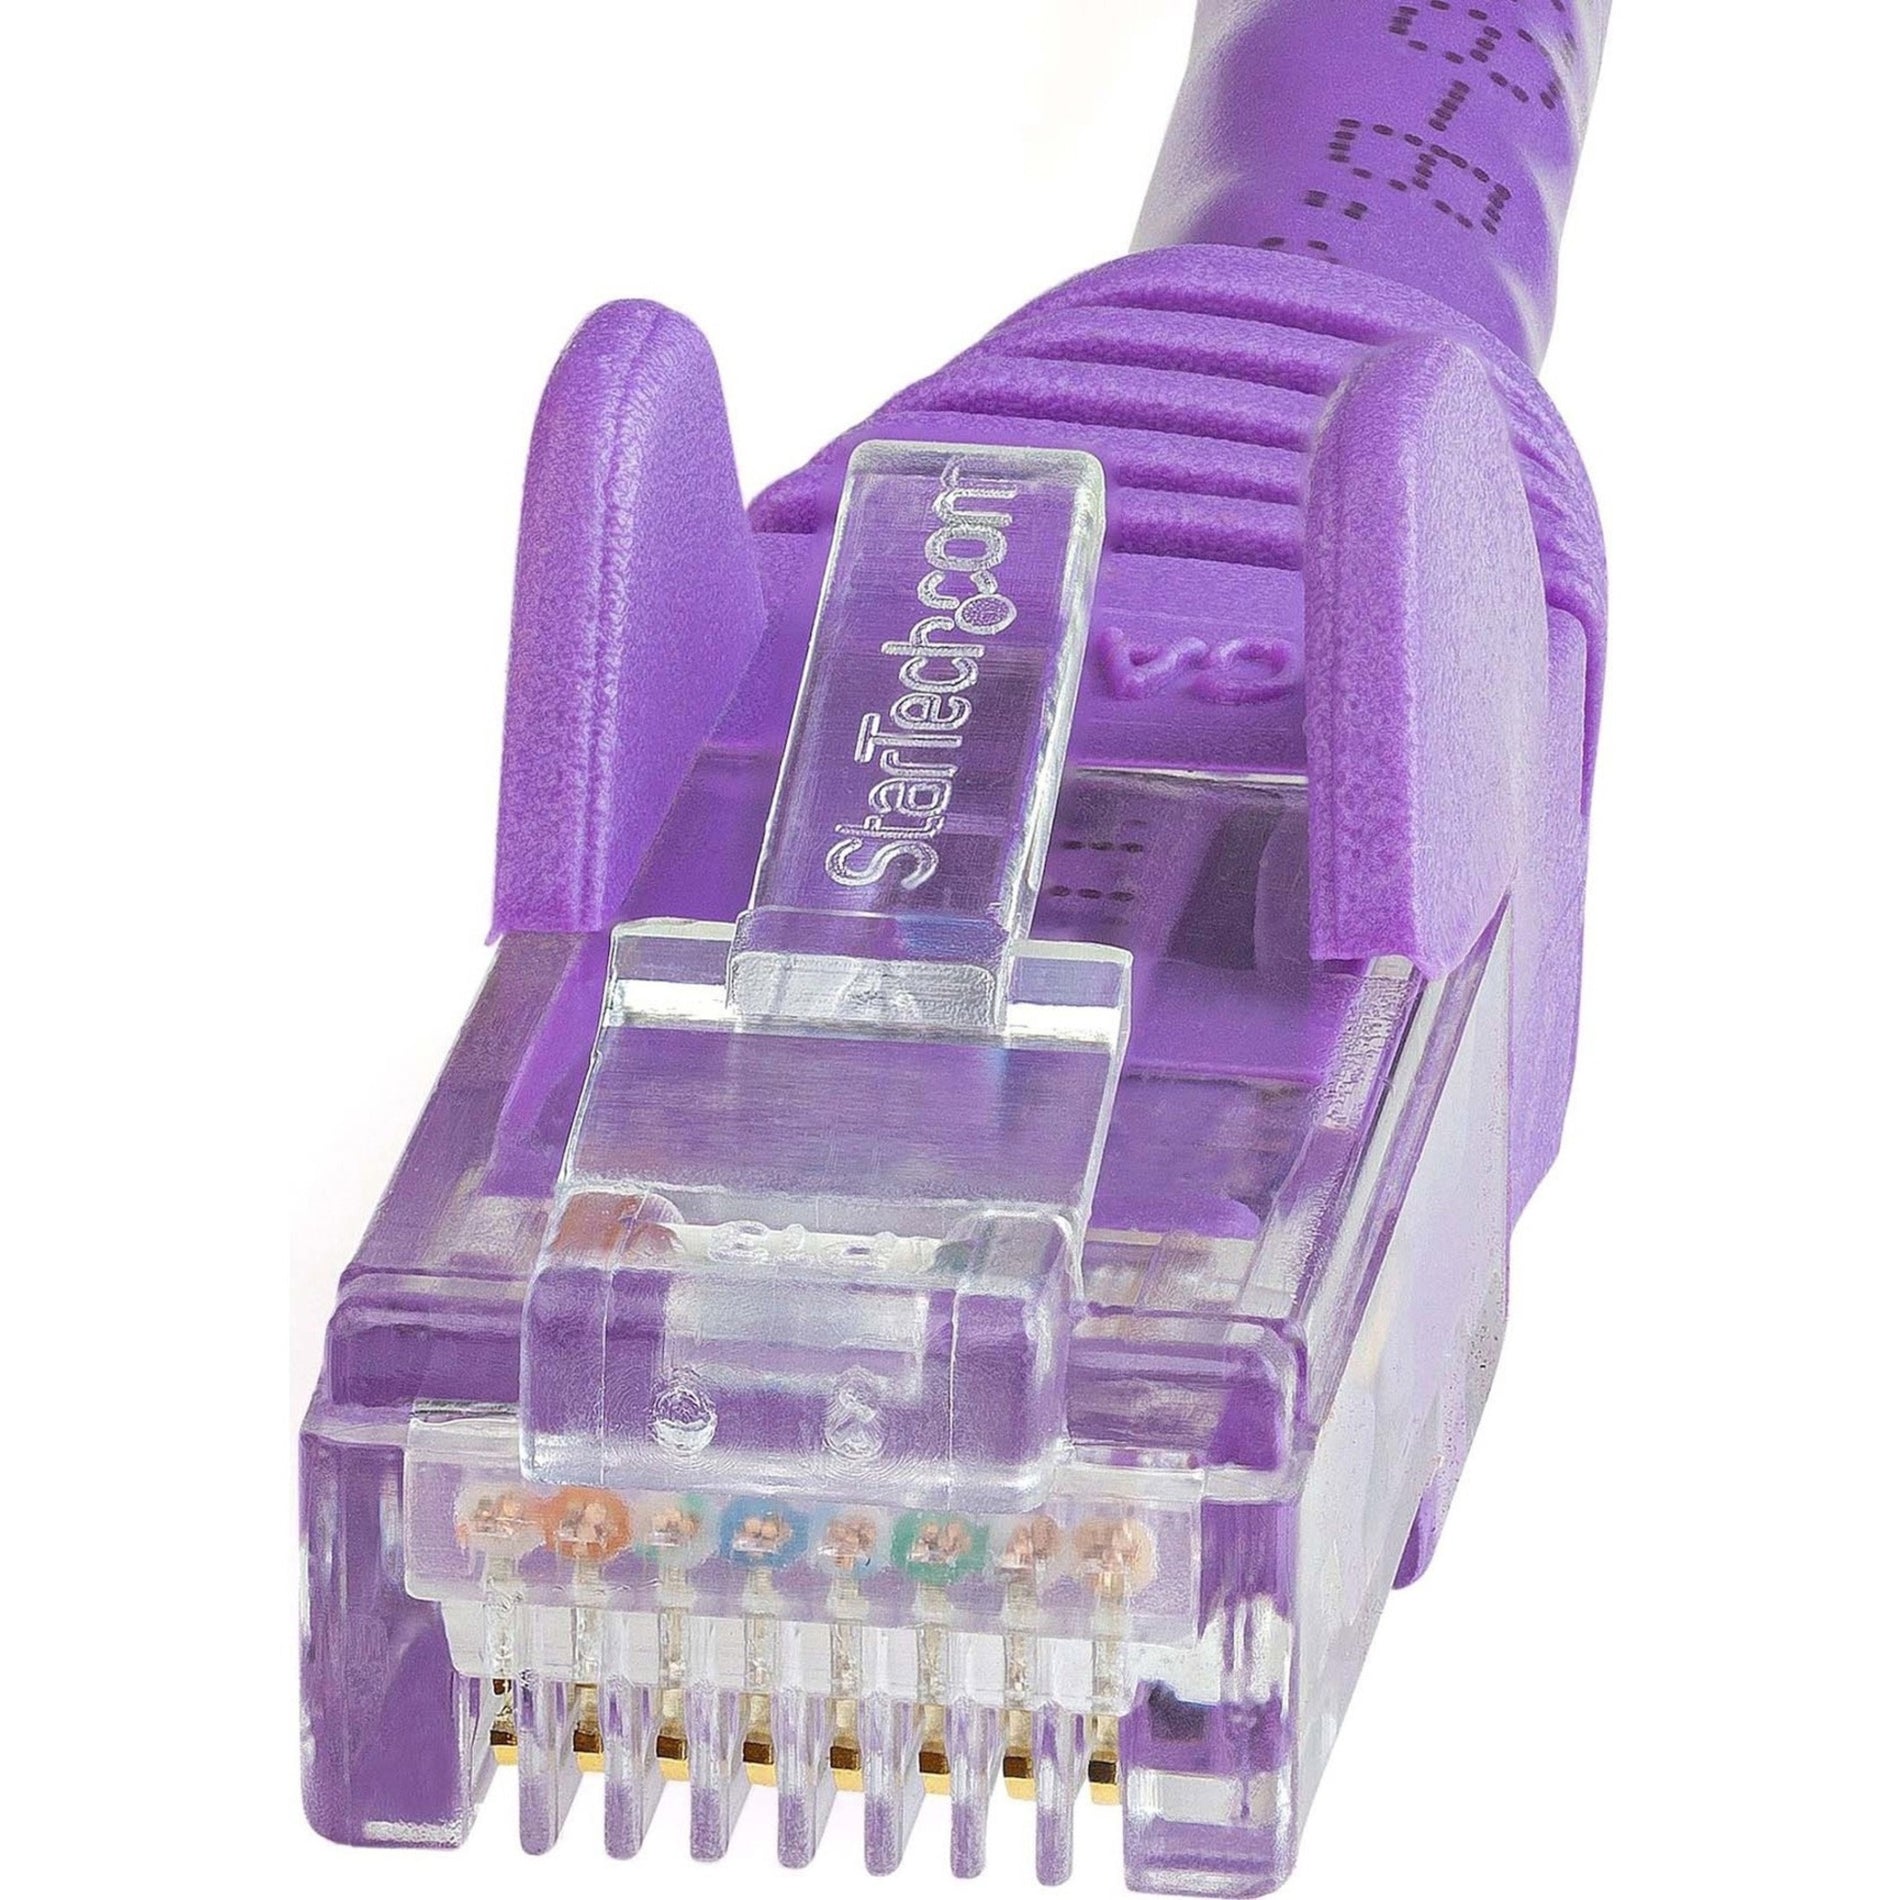 StarTech.com N6PATCH5PL Cat6 Patch Cable, 5ft Purple Ethernet Cable, Snagless RJ45 Connectors